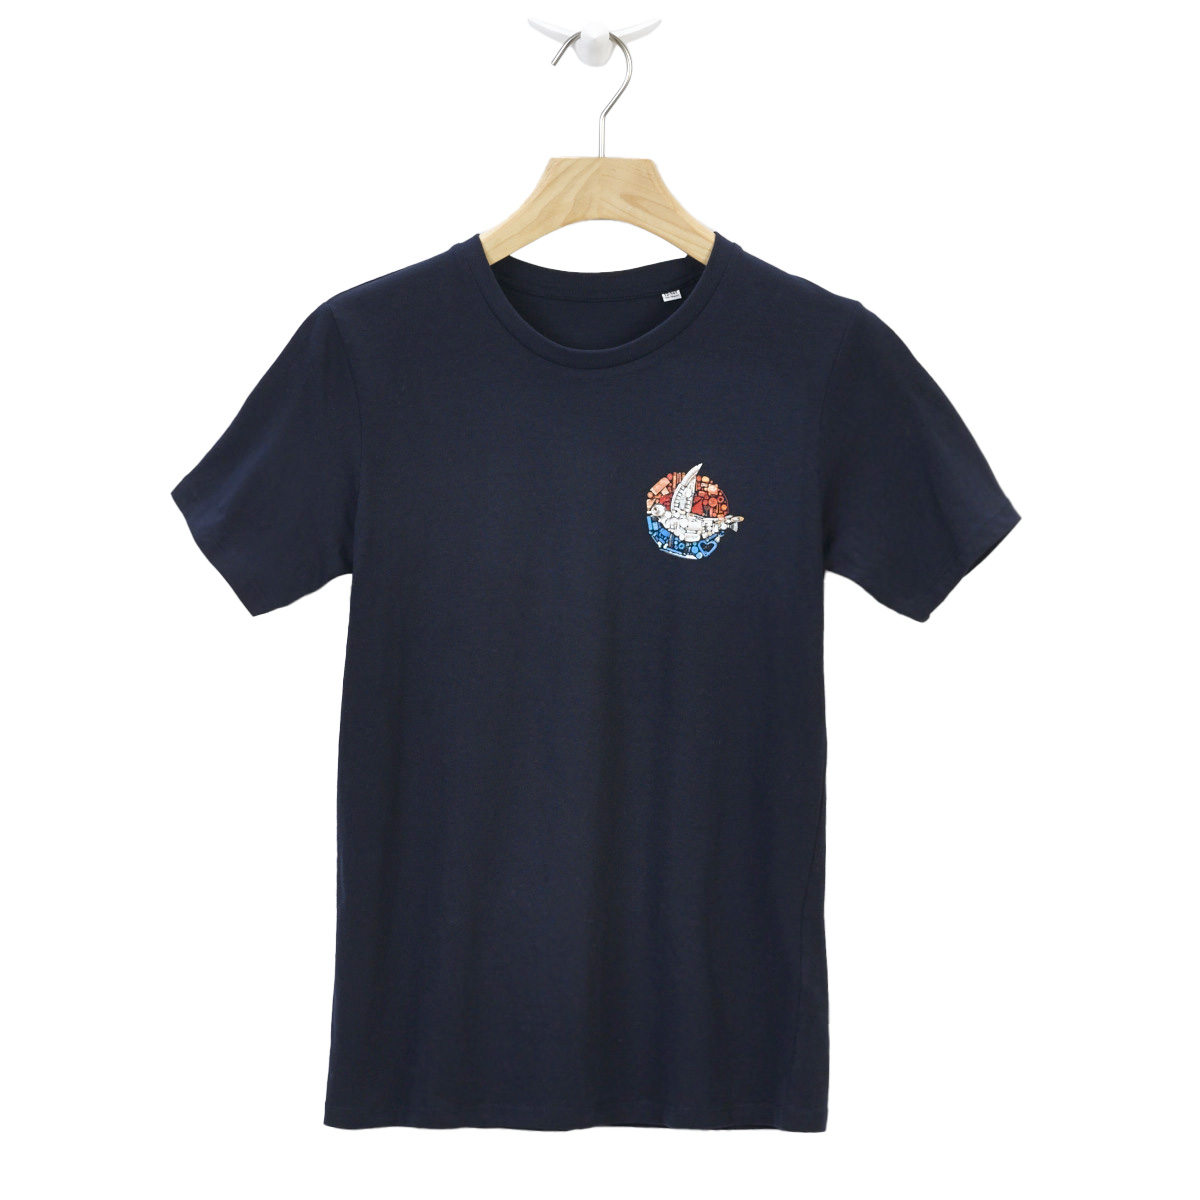 Inselkind jubiläums T-Shirt Kids / navy